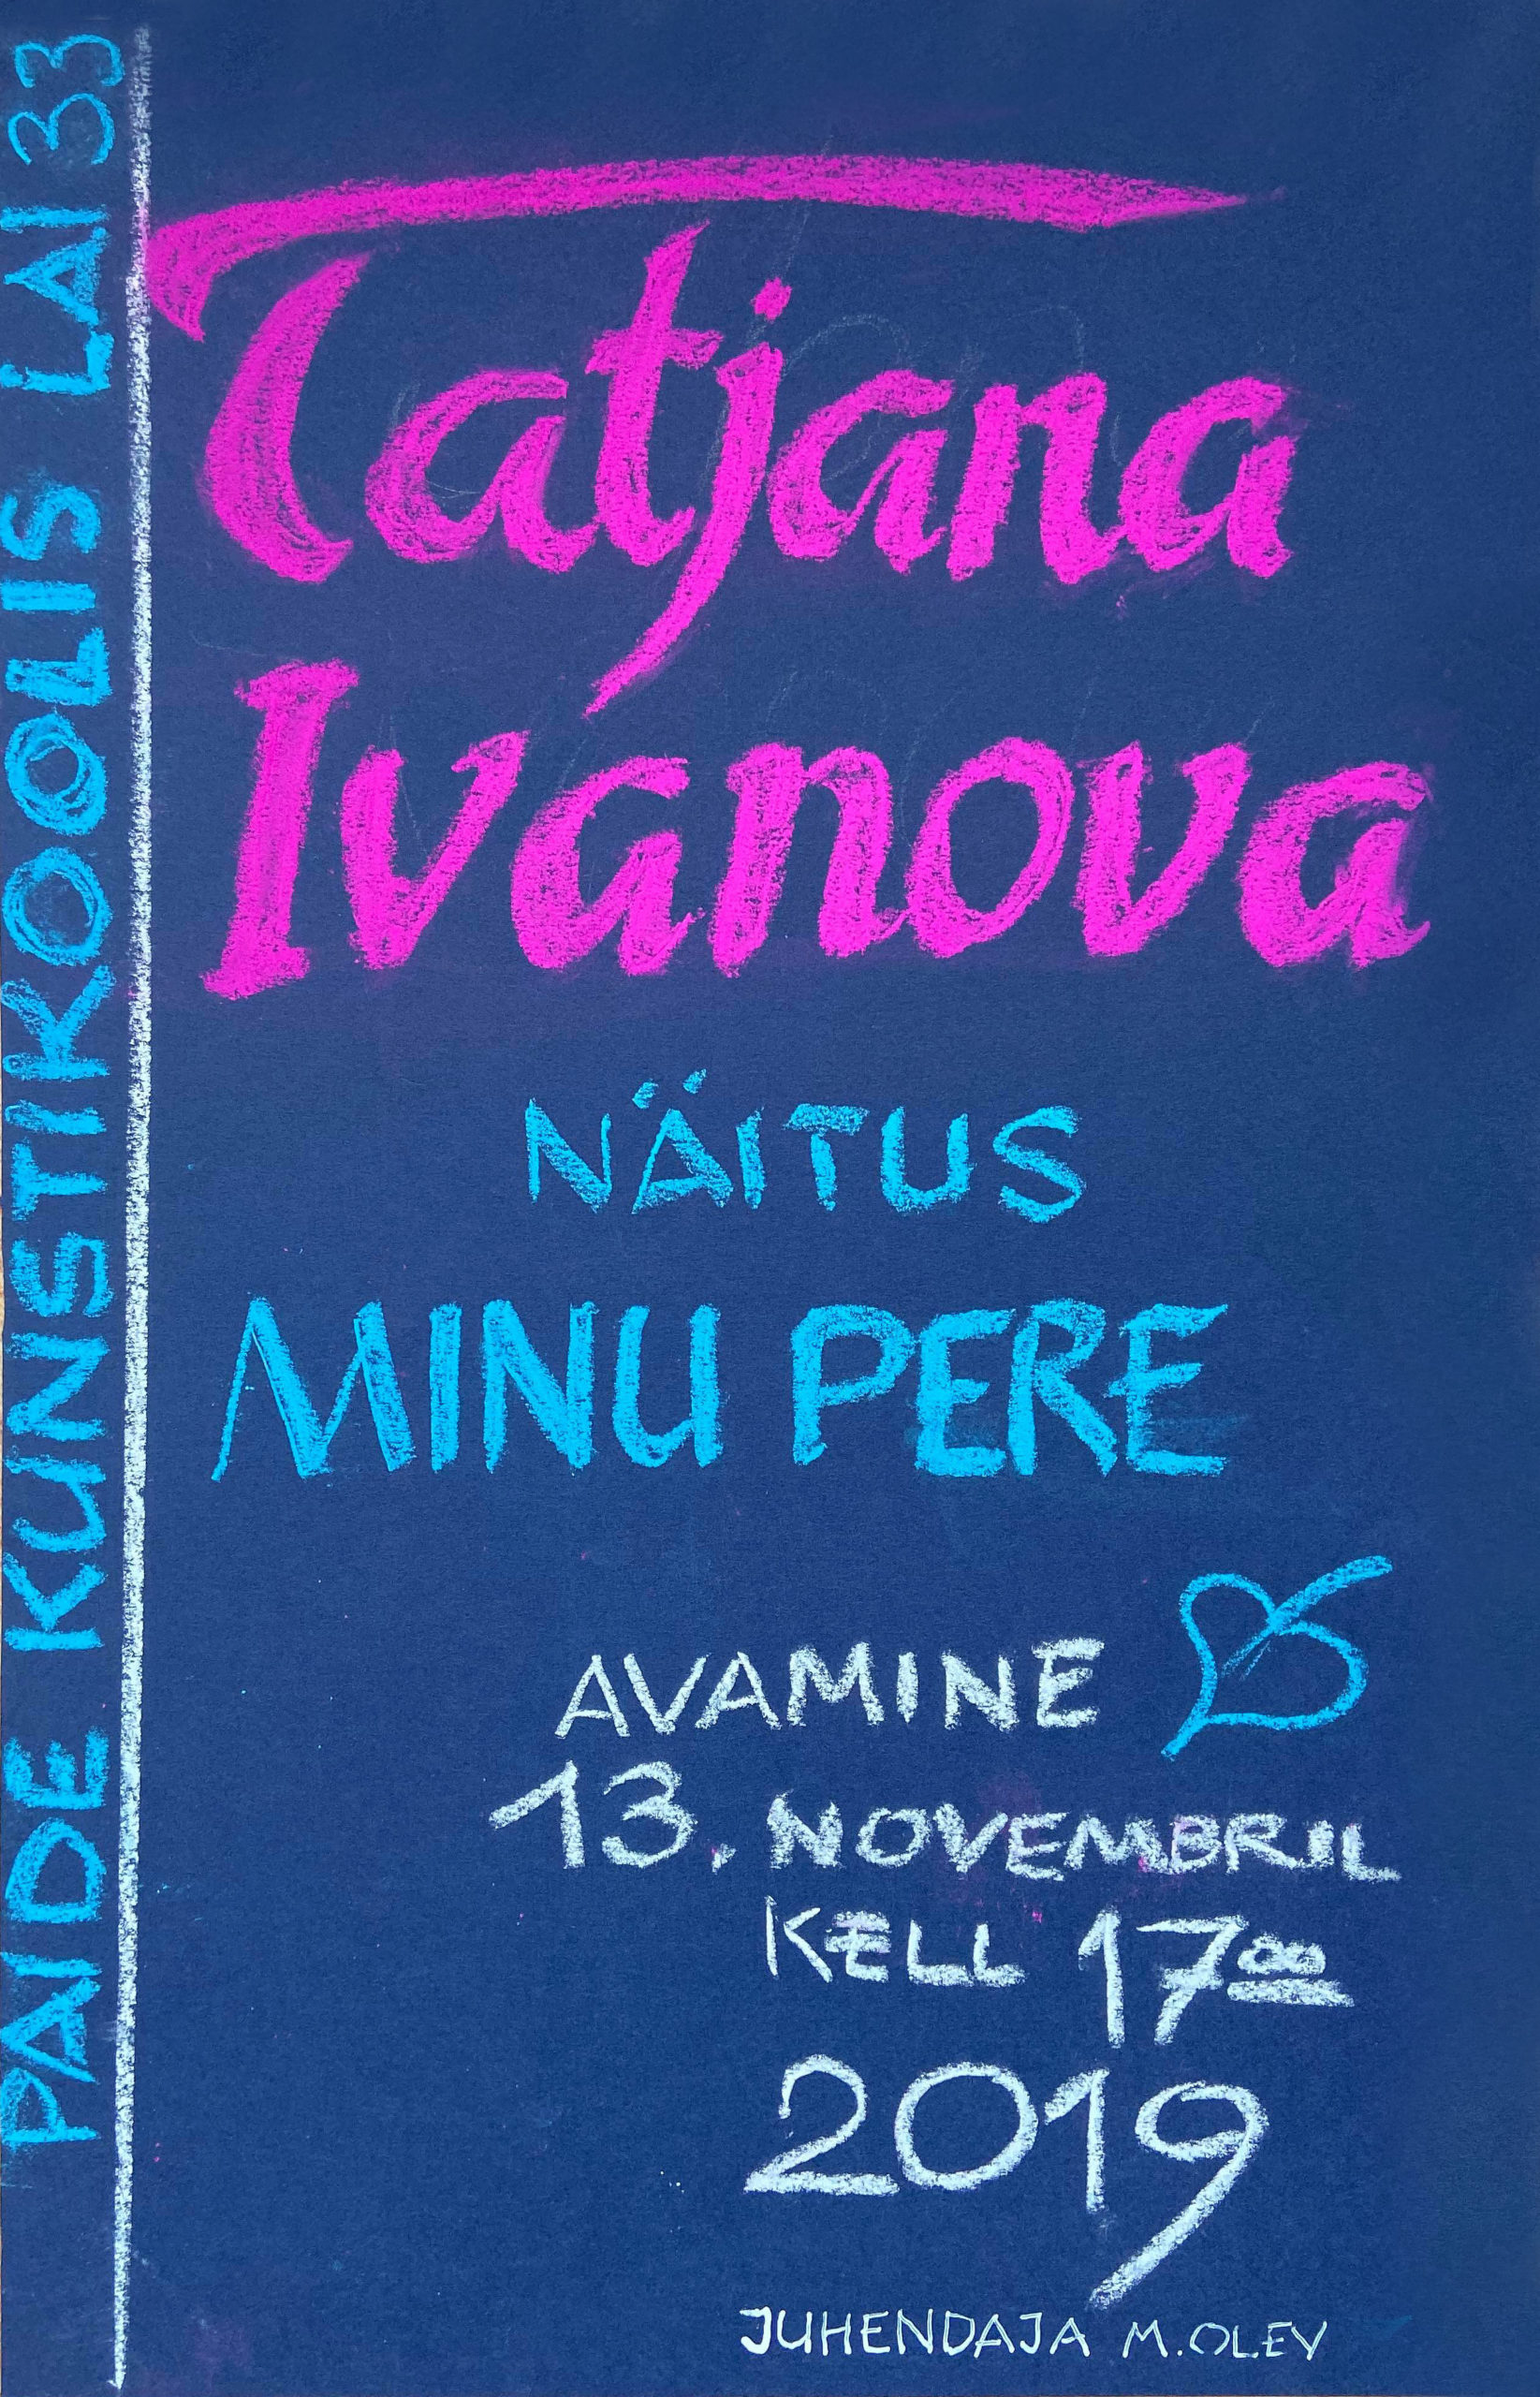 Tatjana-Ivanova_13.11.2019_FB-scaled-1